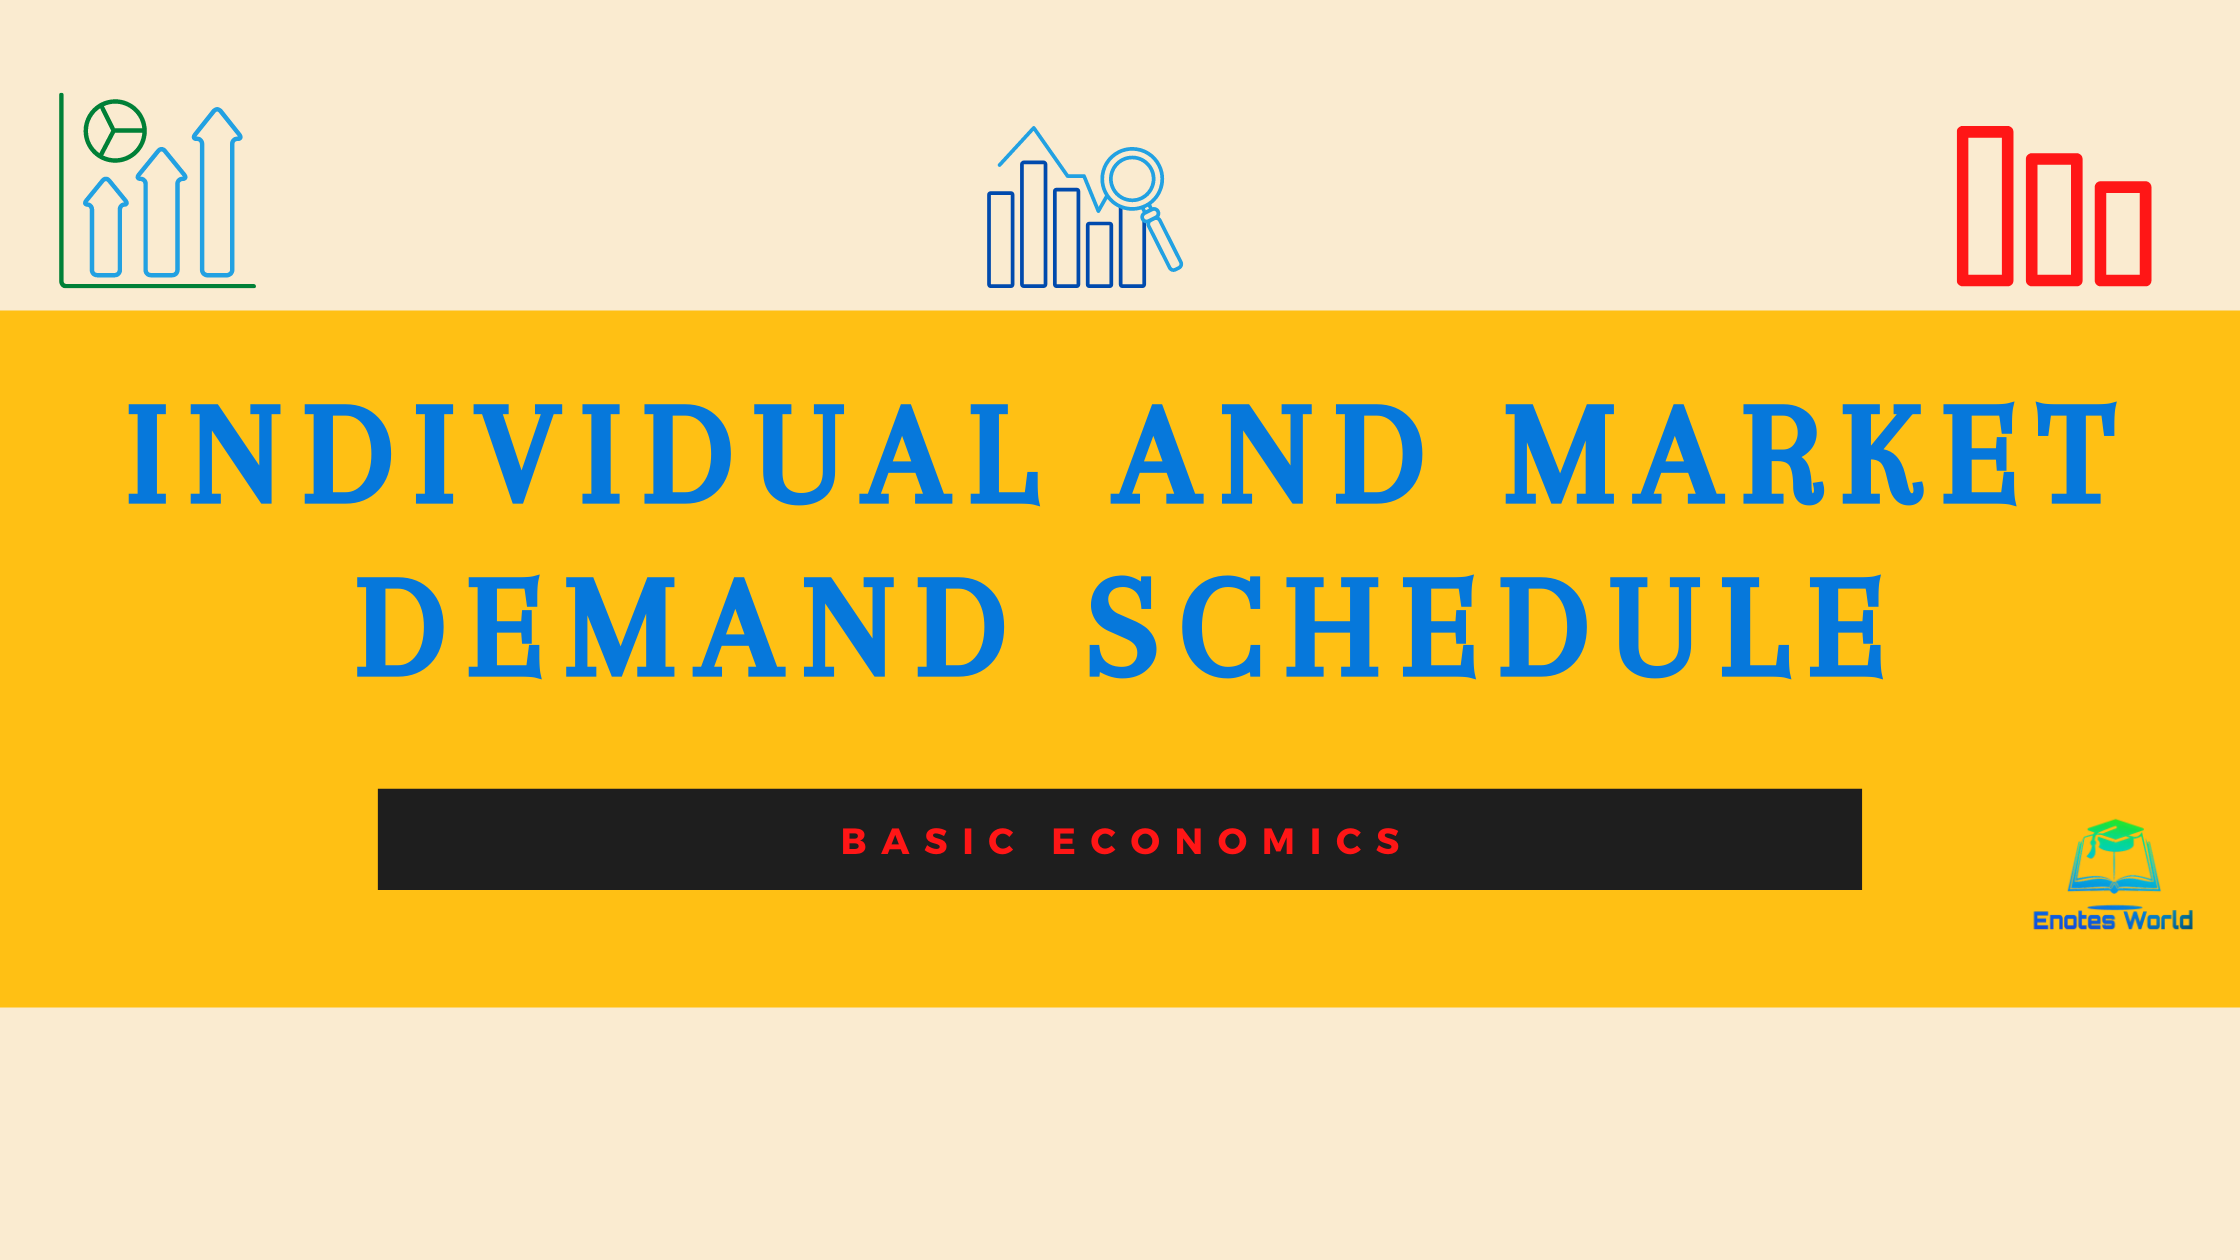 master demand schedule